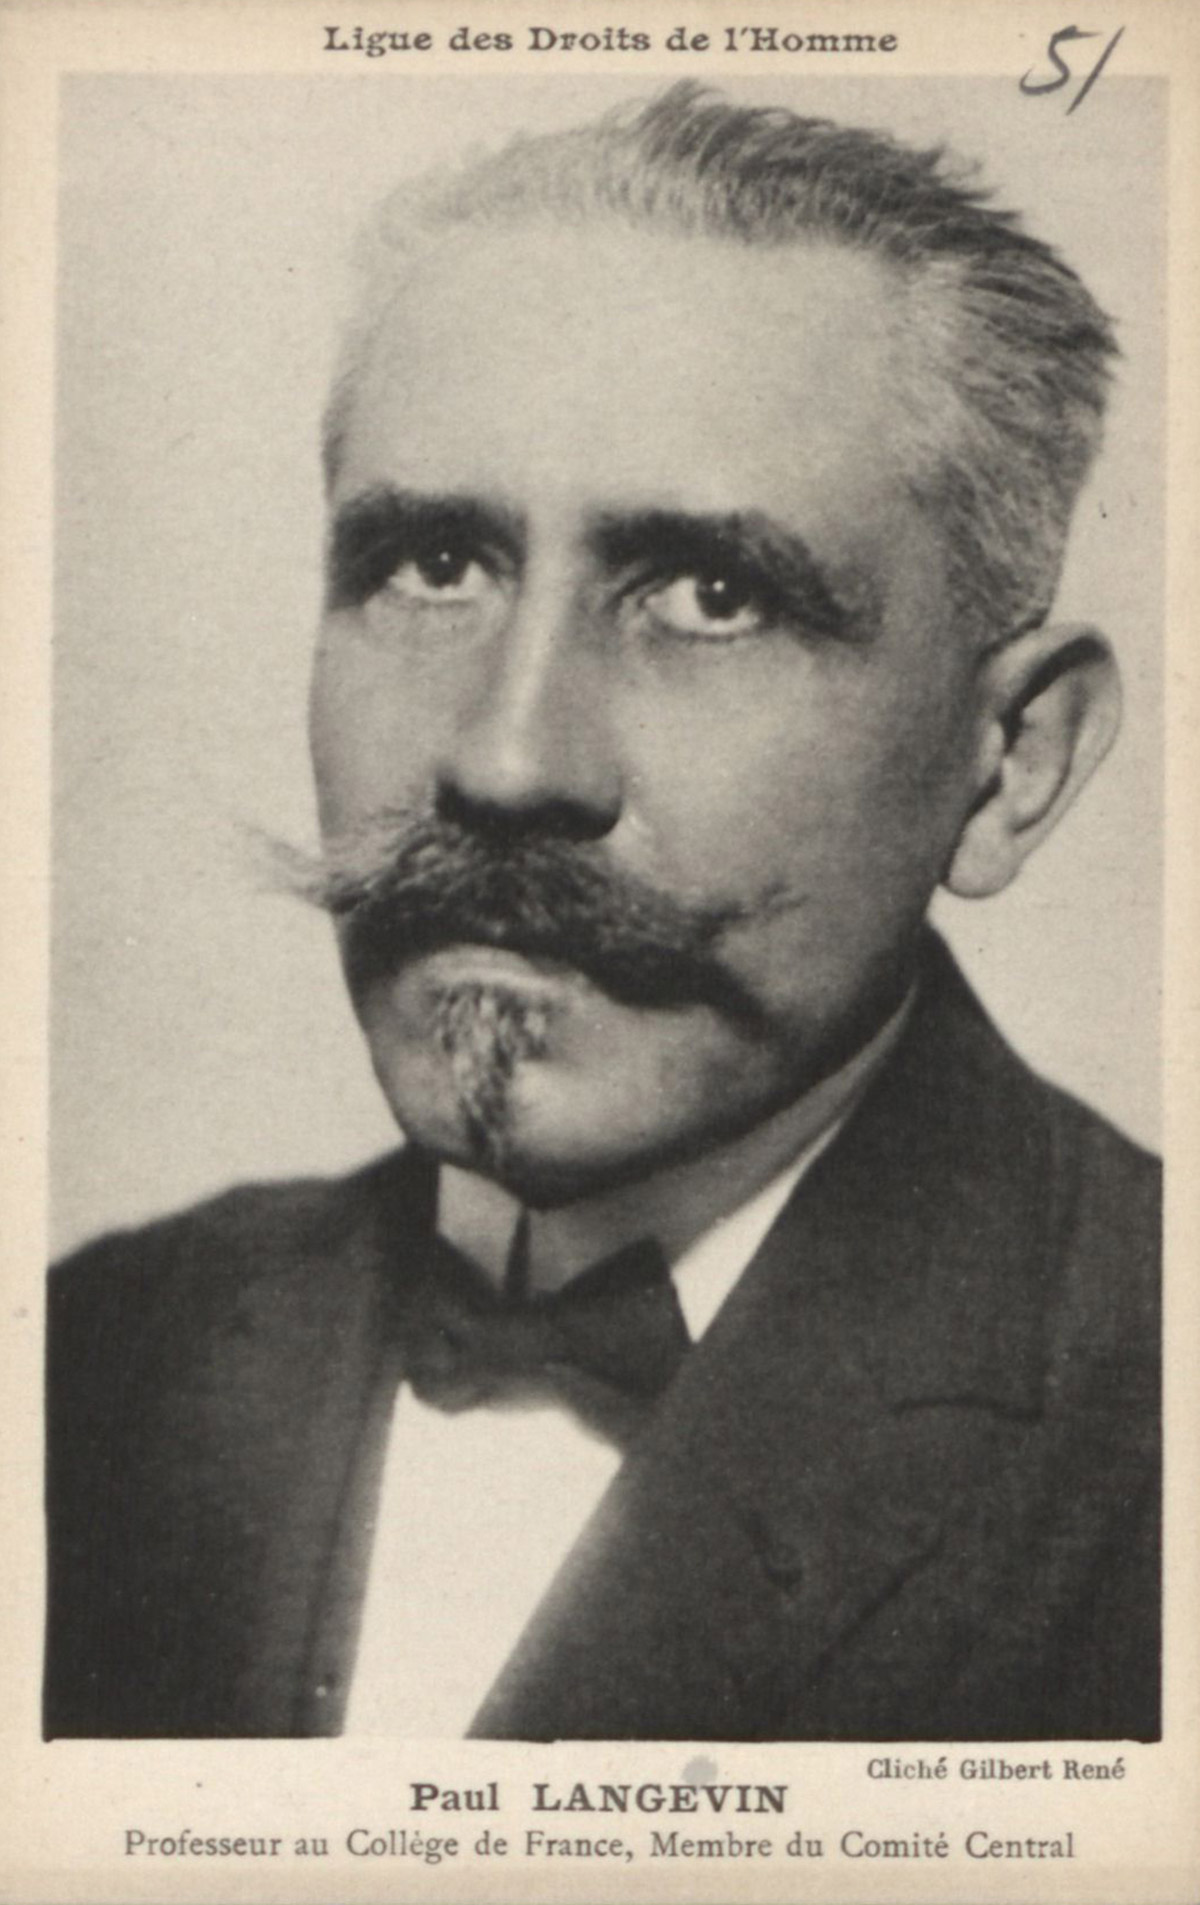 Portrait de Paul Langevin, carte postale, s.d.